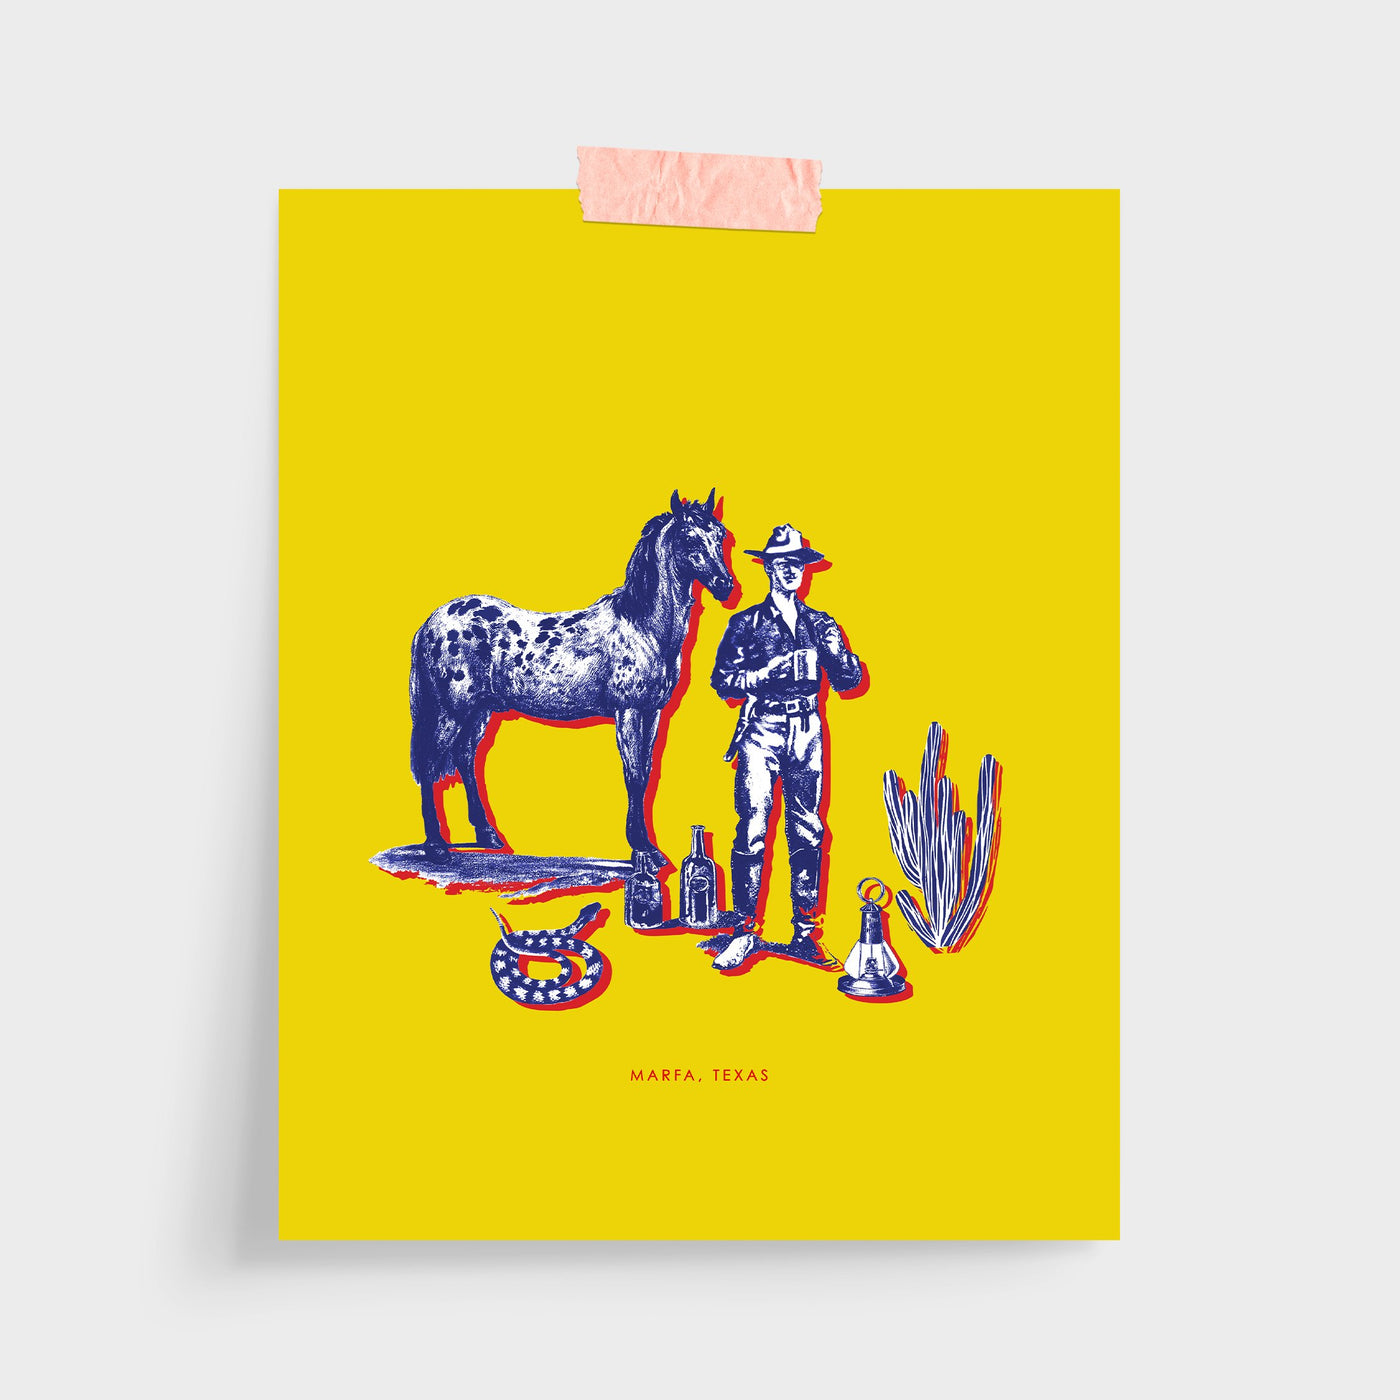 Gallery Prints Yellow / 5x7 / Unframed Marfa Cowboy Print dombezalergii